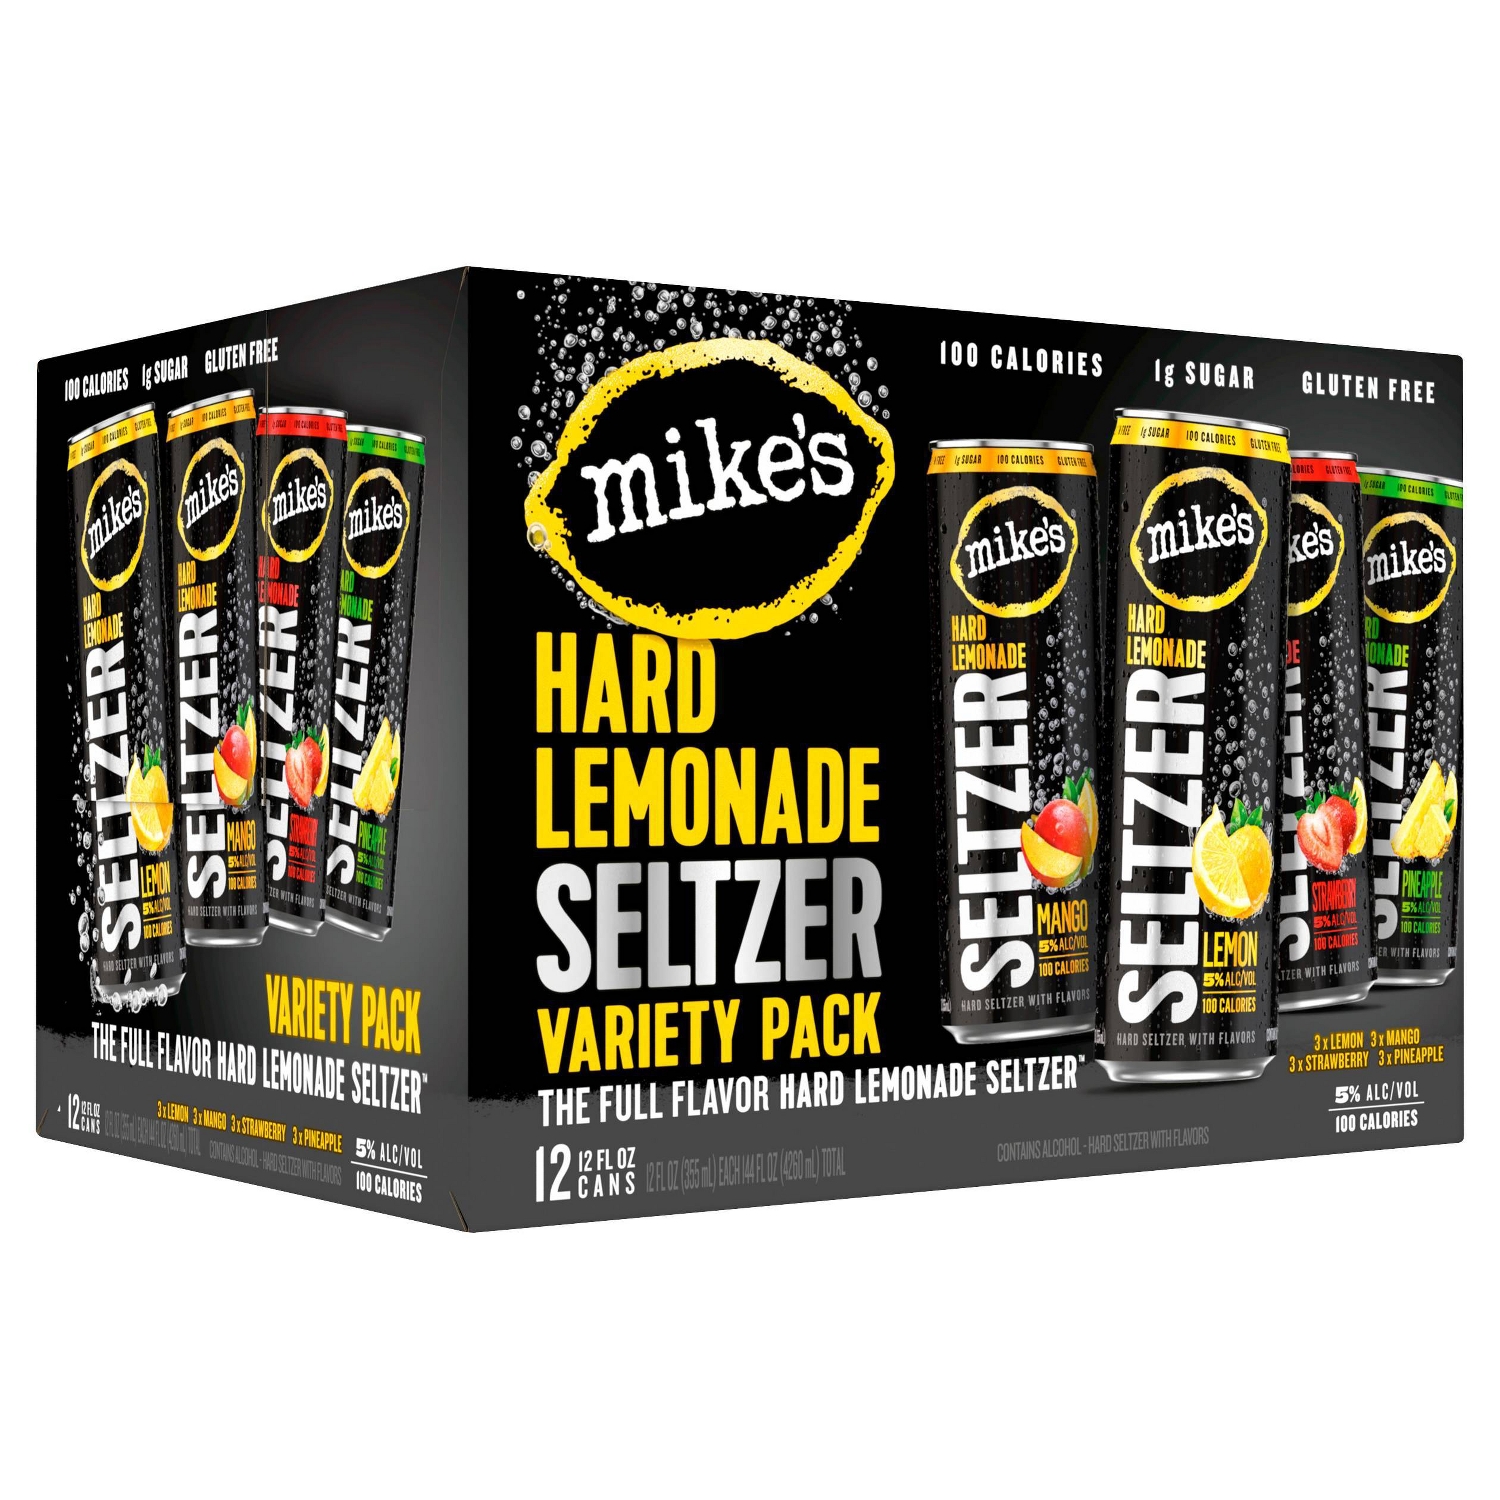 Better than Free 12ct Mike's Hard Lemonade Seltzer a/Two Rebates at TARGET in: AK, AZ, DC, DE, FL, GA, ID, KS, KY, MA, MS, MT, NE, ND, NV, NM, OK, OR, RI, SC, SD, WI